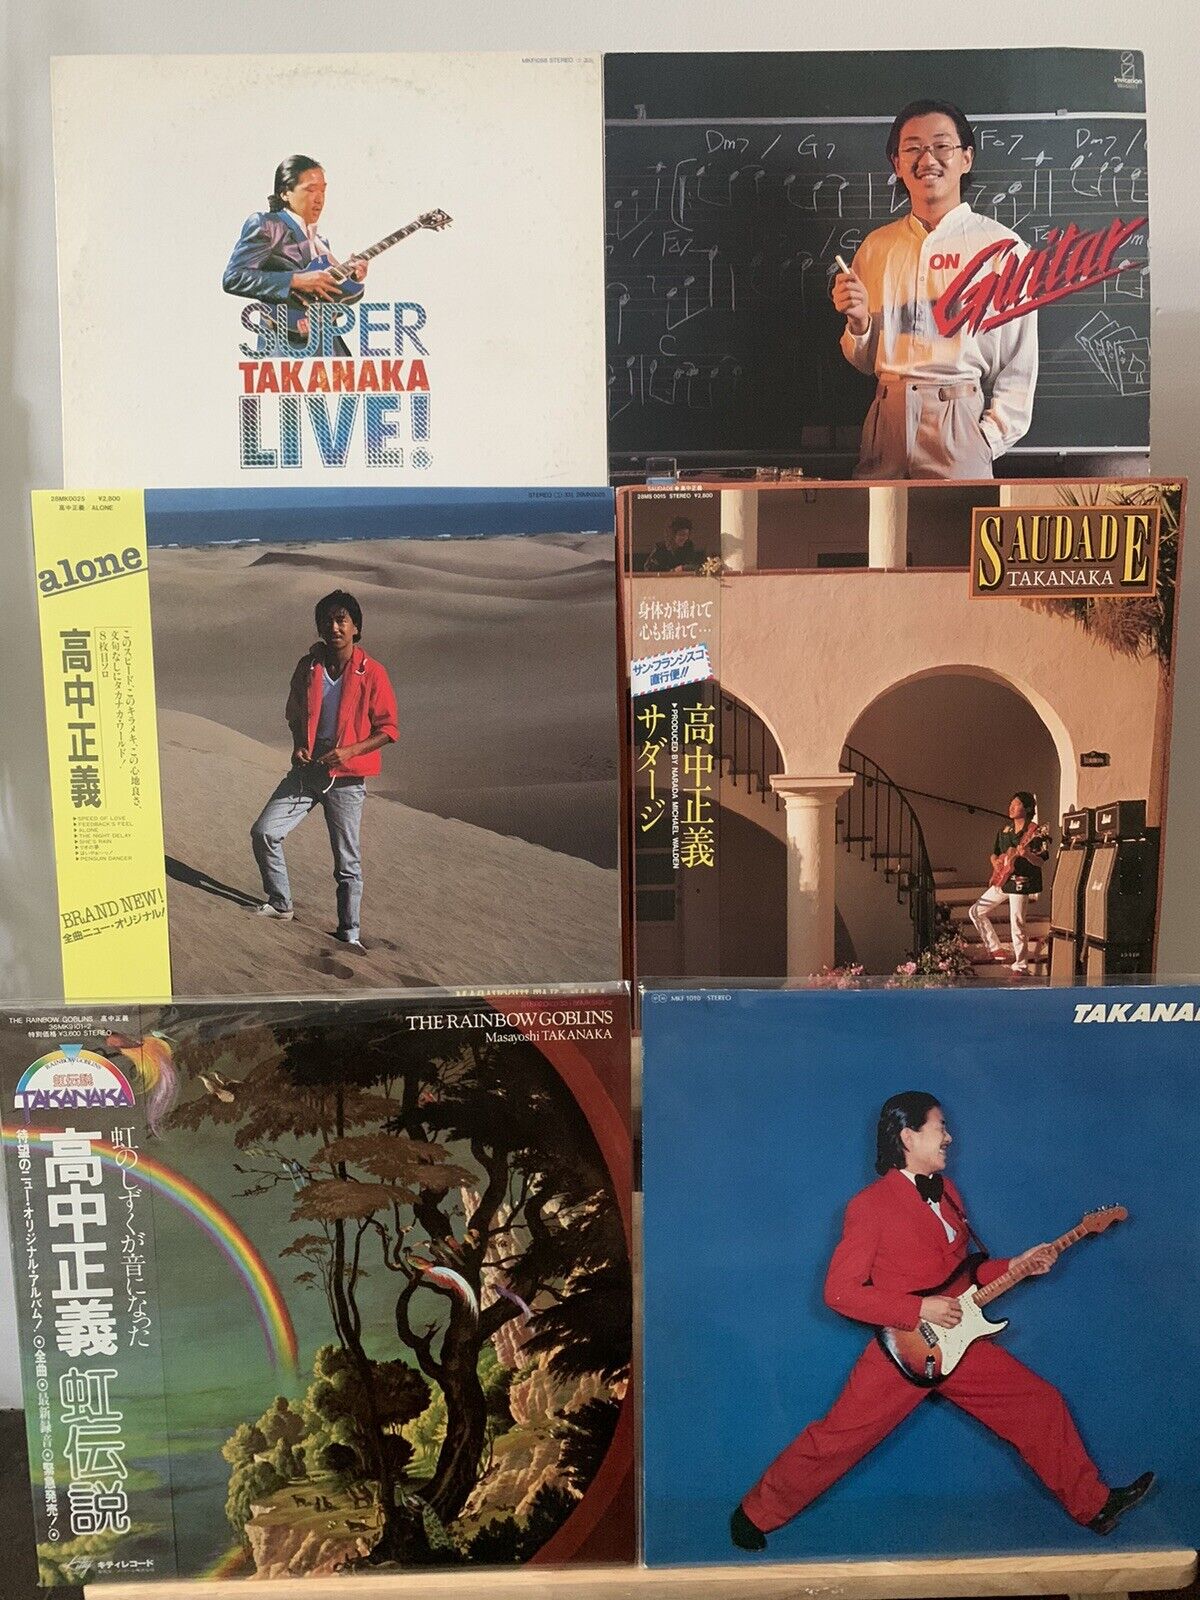 Masayoshi Takanaka - Lot of 6 vinyls -  Japan LP w/OBI